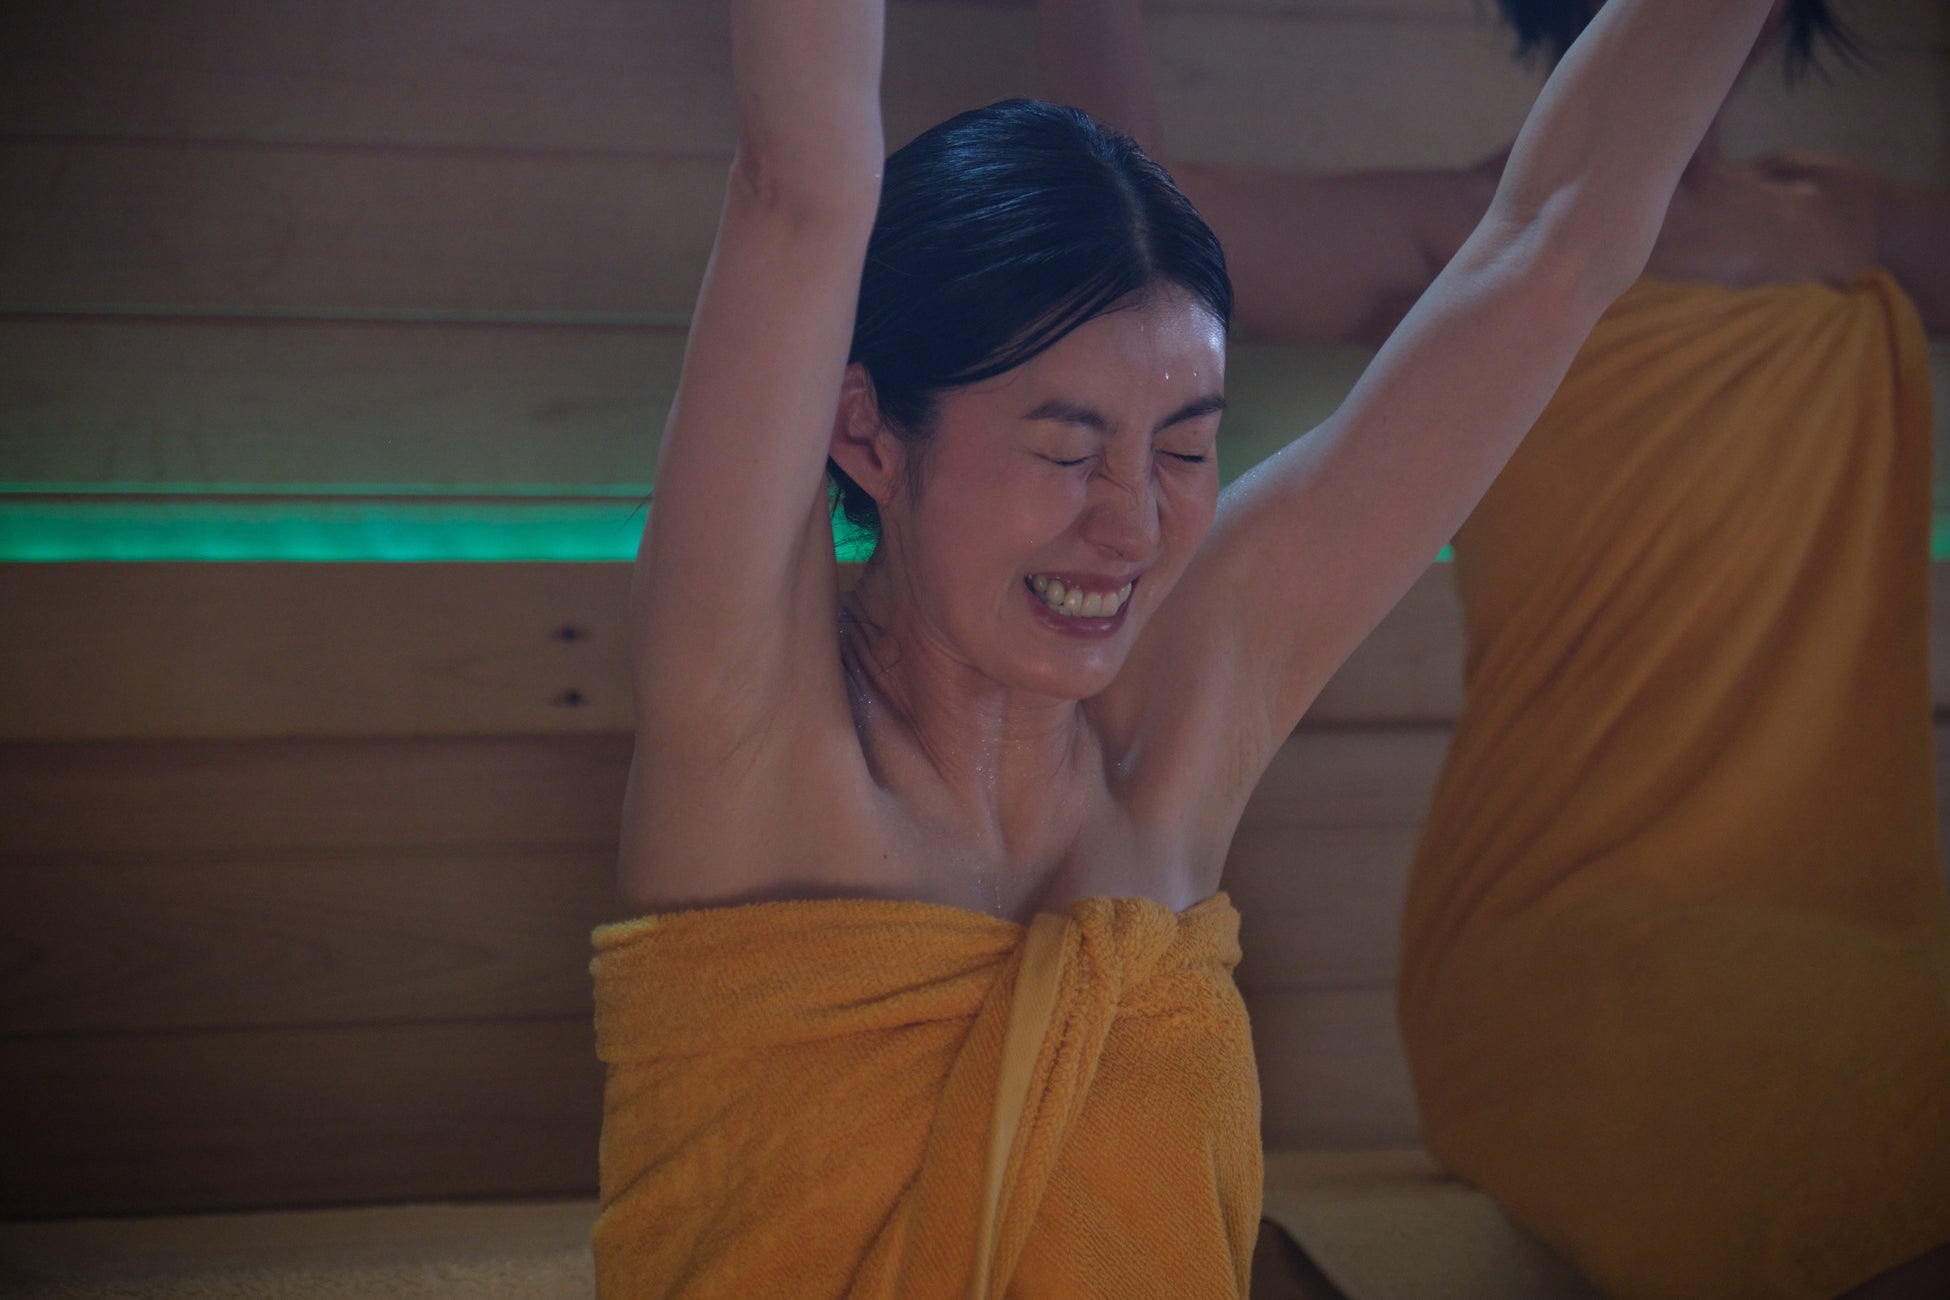 サウナの魅力とシュールな世界観の新感覚ドラマ「湯遊ワンダーランド」のDVD-BOXが発売決定！